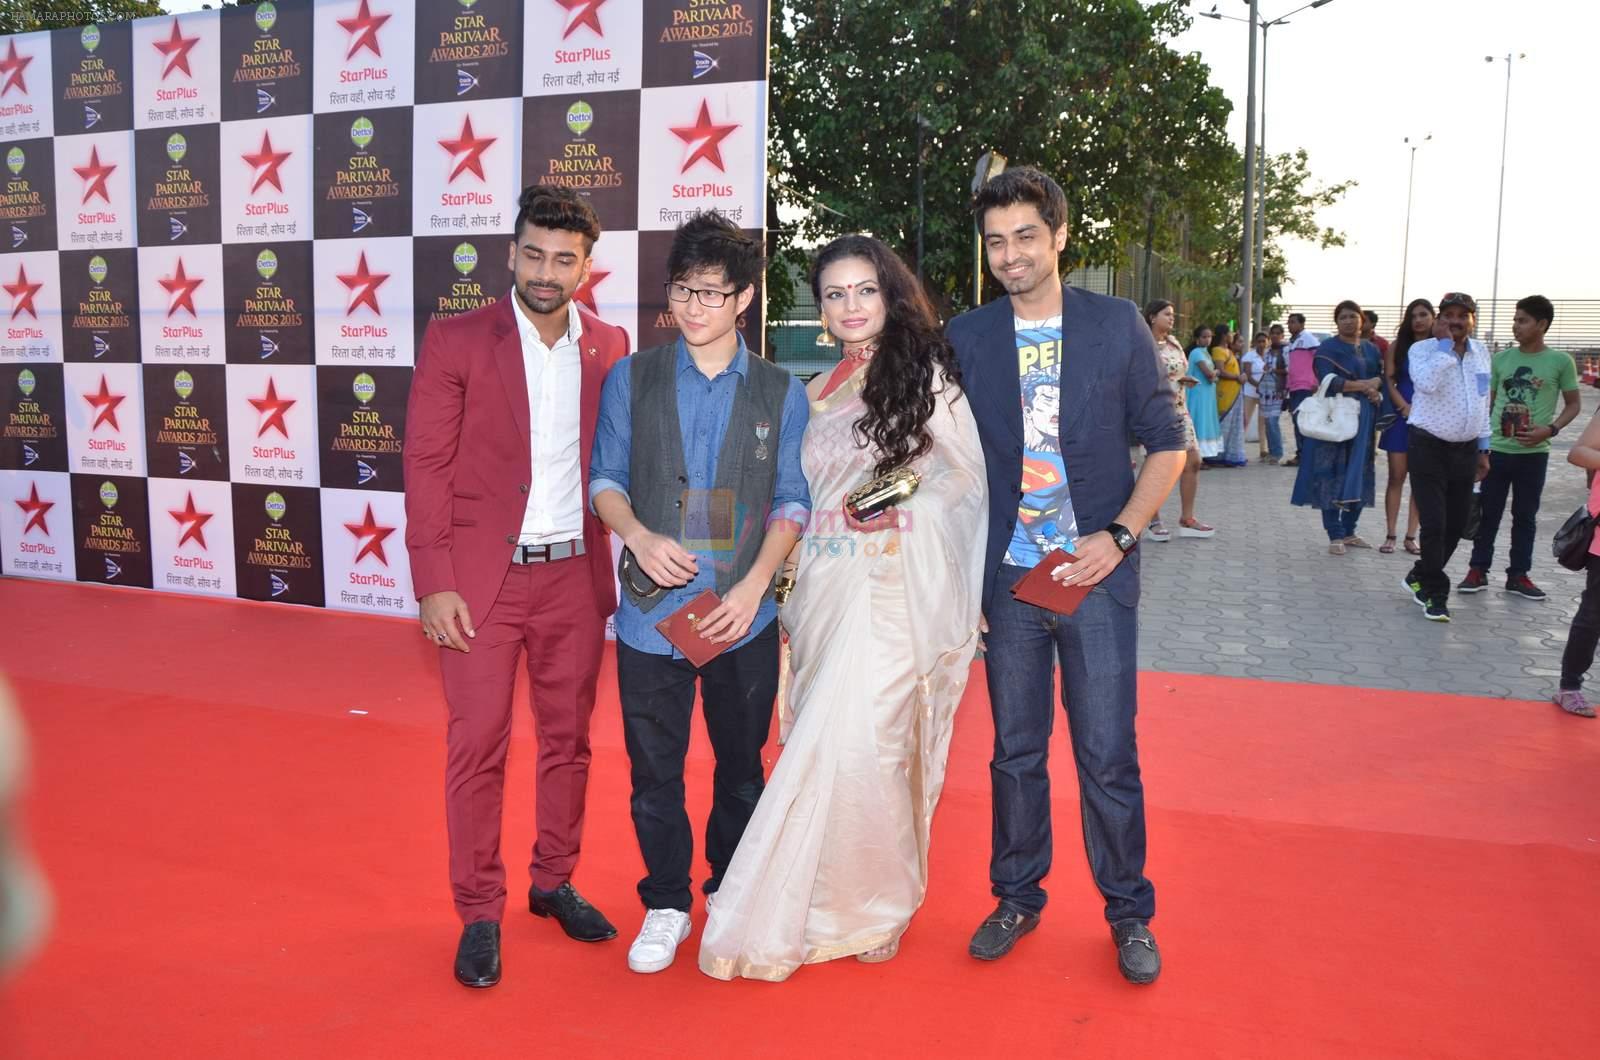 at Star Pariwar Awards in Mumbai on 17th May 2015